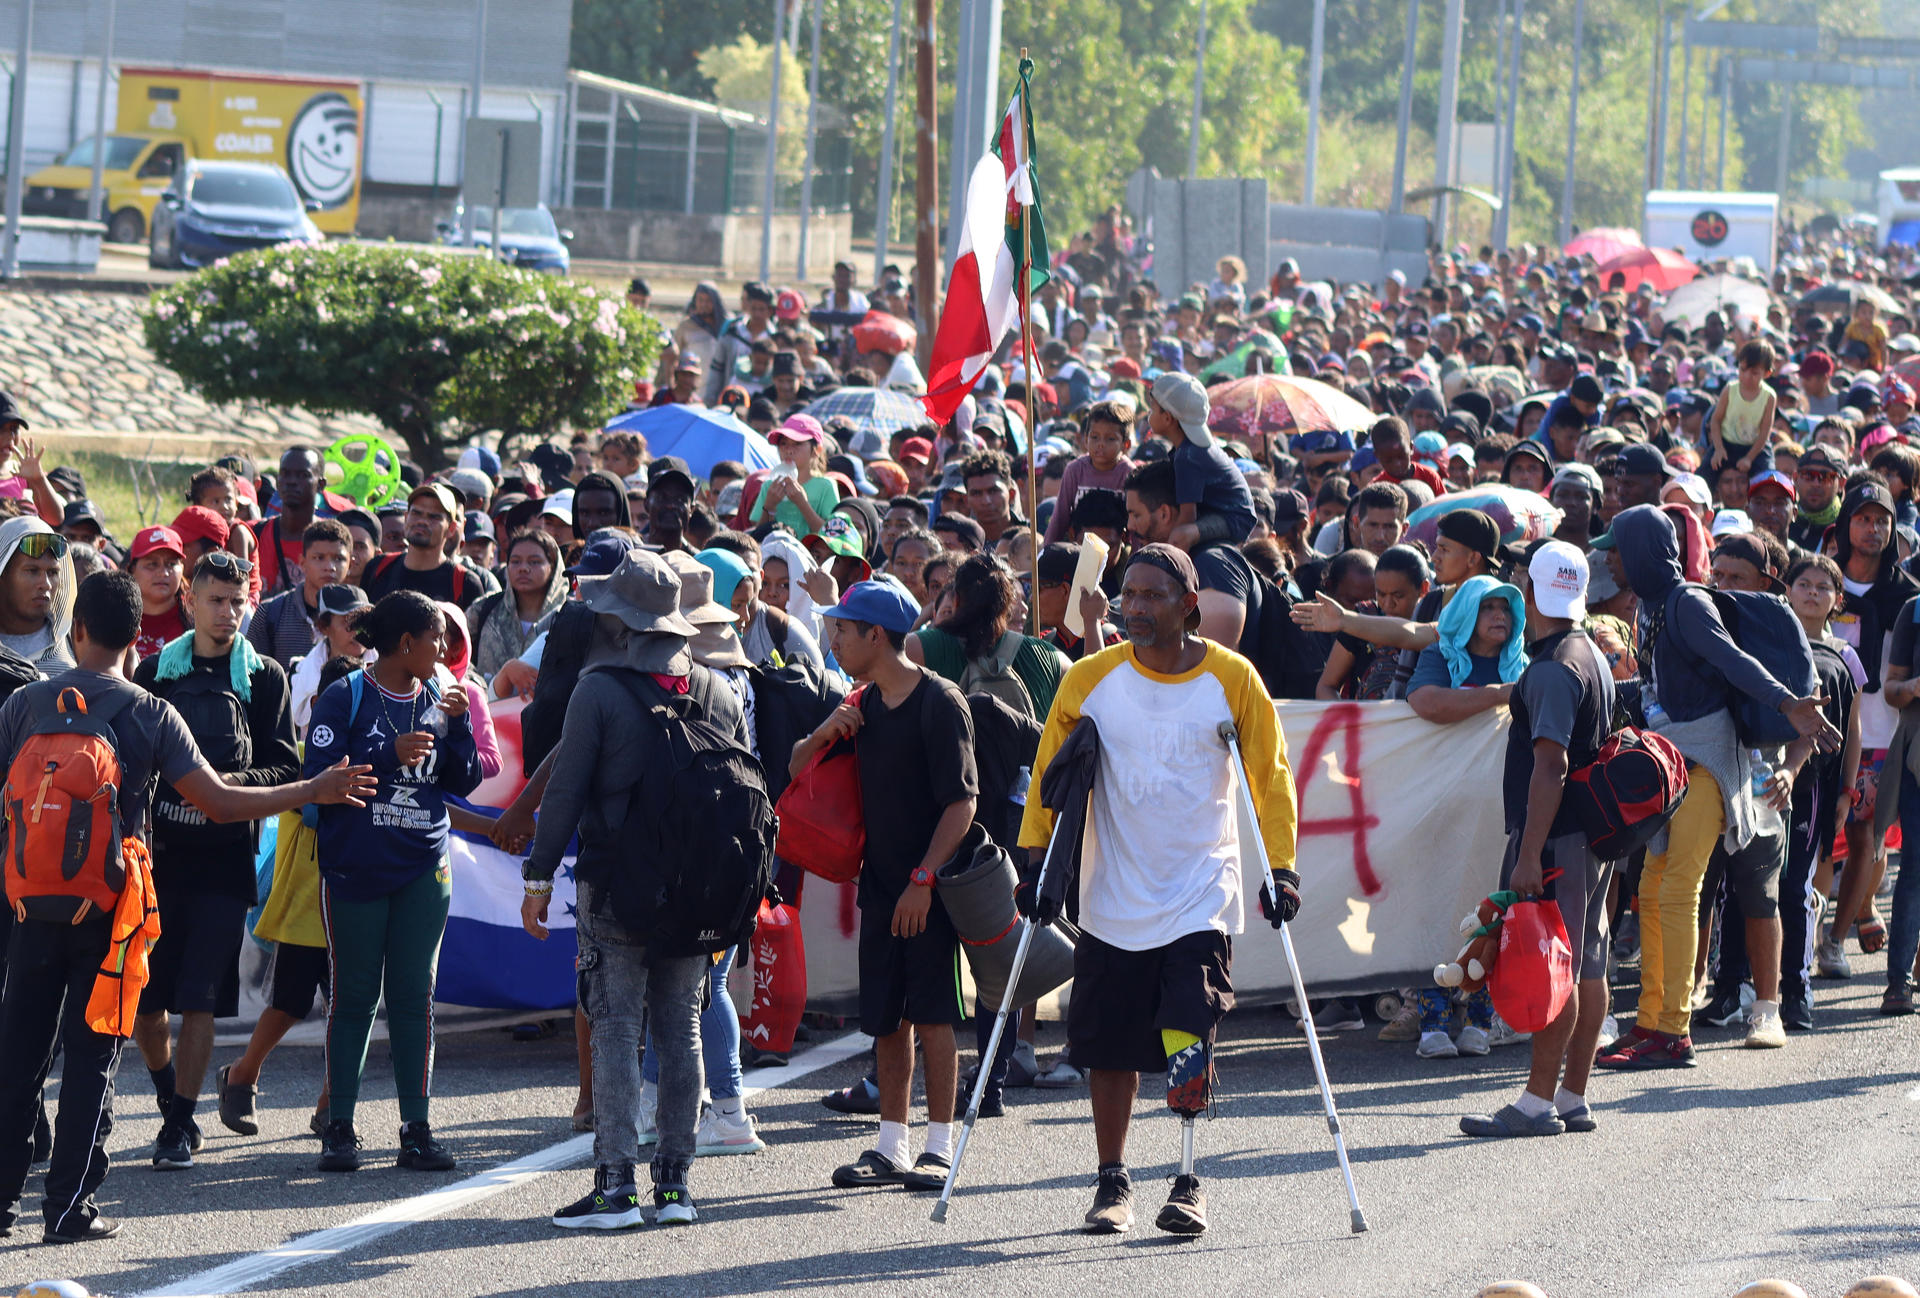 Migrantes caminan en caravana este martes, para poder llegar a la frontera norte, en el municipio de Huixtla en Chiapas (México). EFE/Juan Manuel Blanco